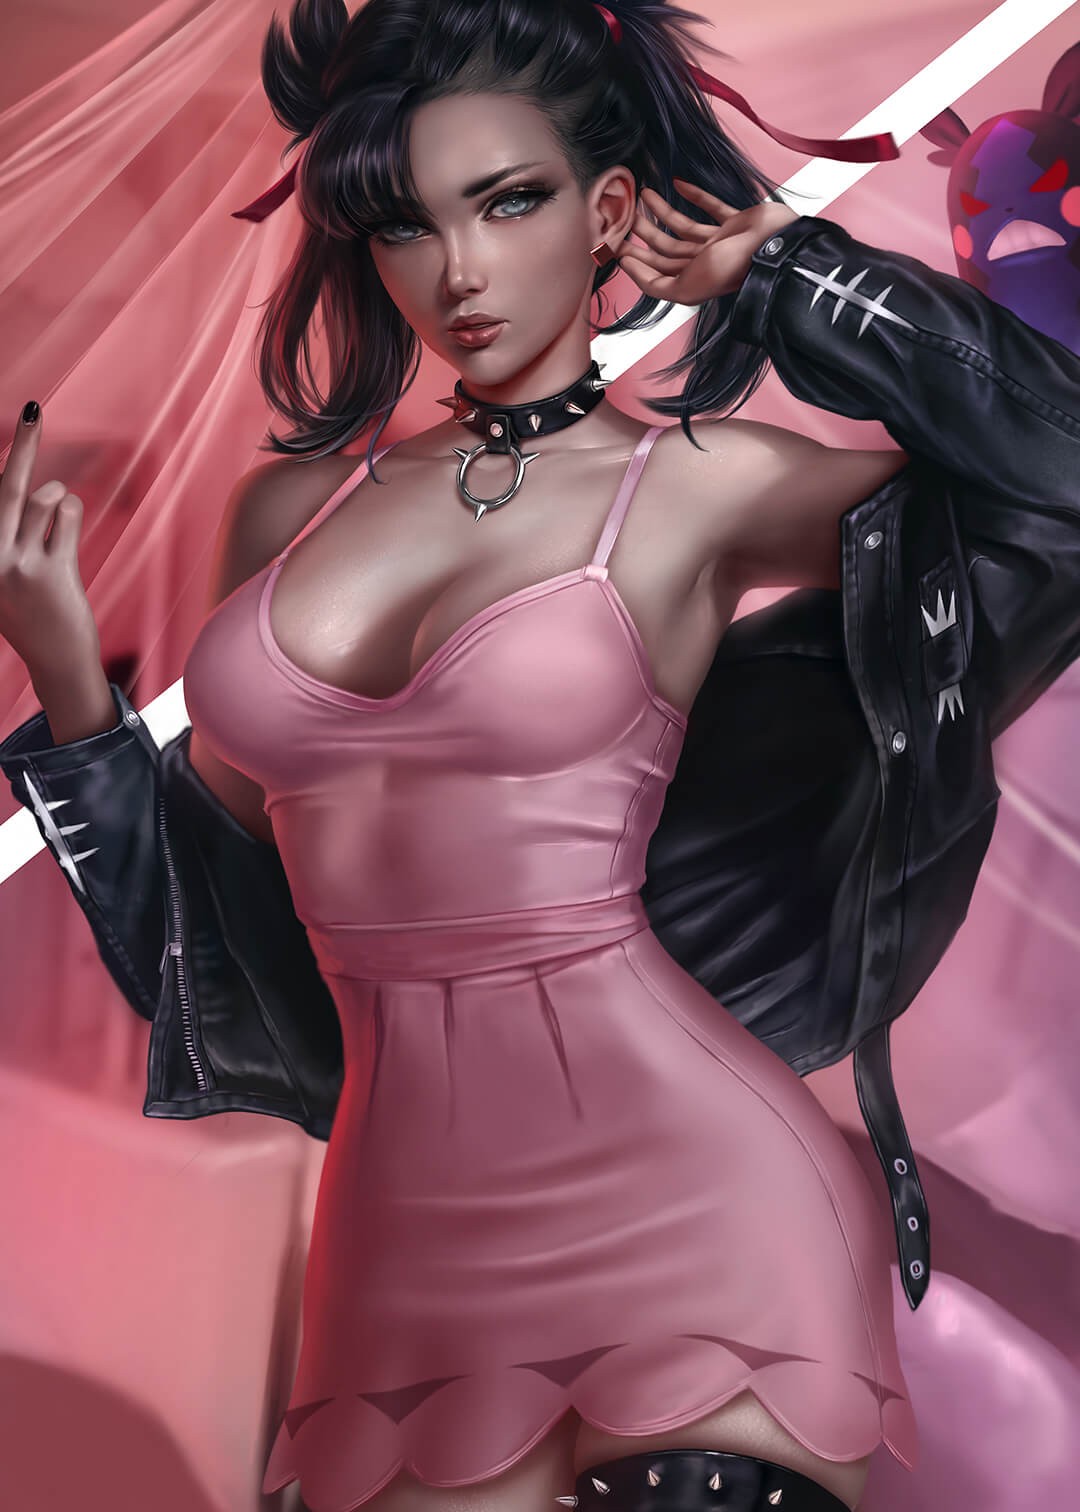 尼尔机械纪元女角色美图：黑色外套粉色连体衣的时尚靓女~